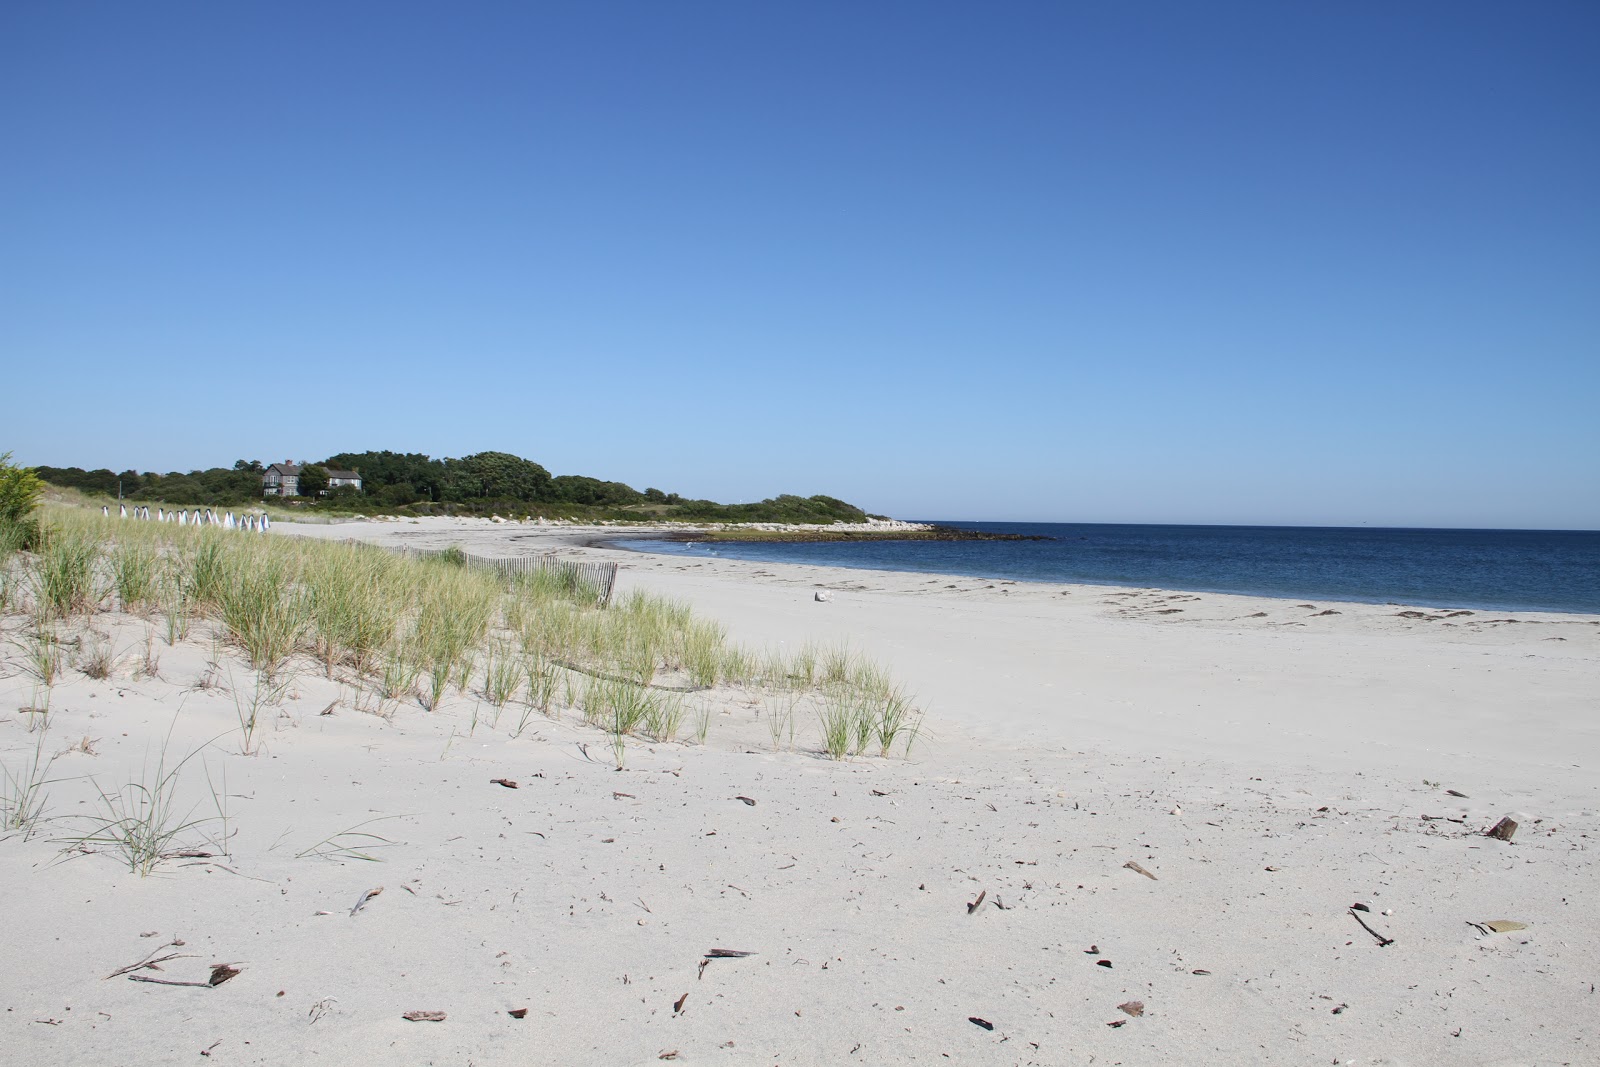 Zdjęcie Fishers Island Beach z powierzchnią jasny piasek